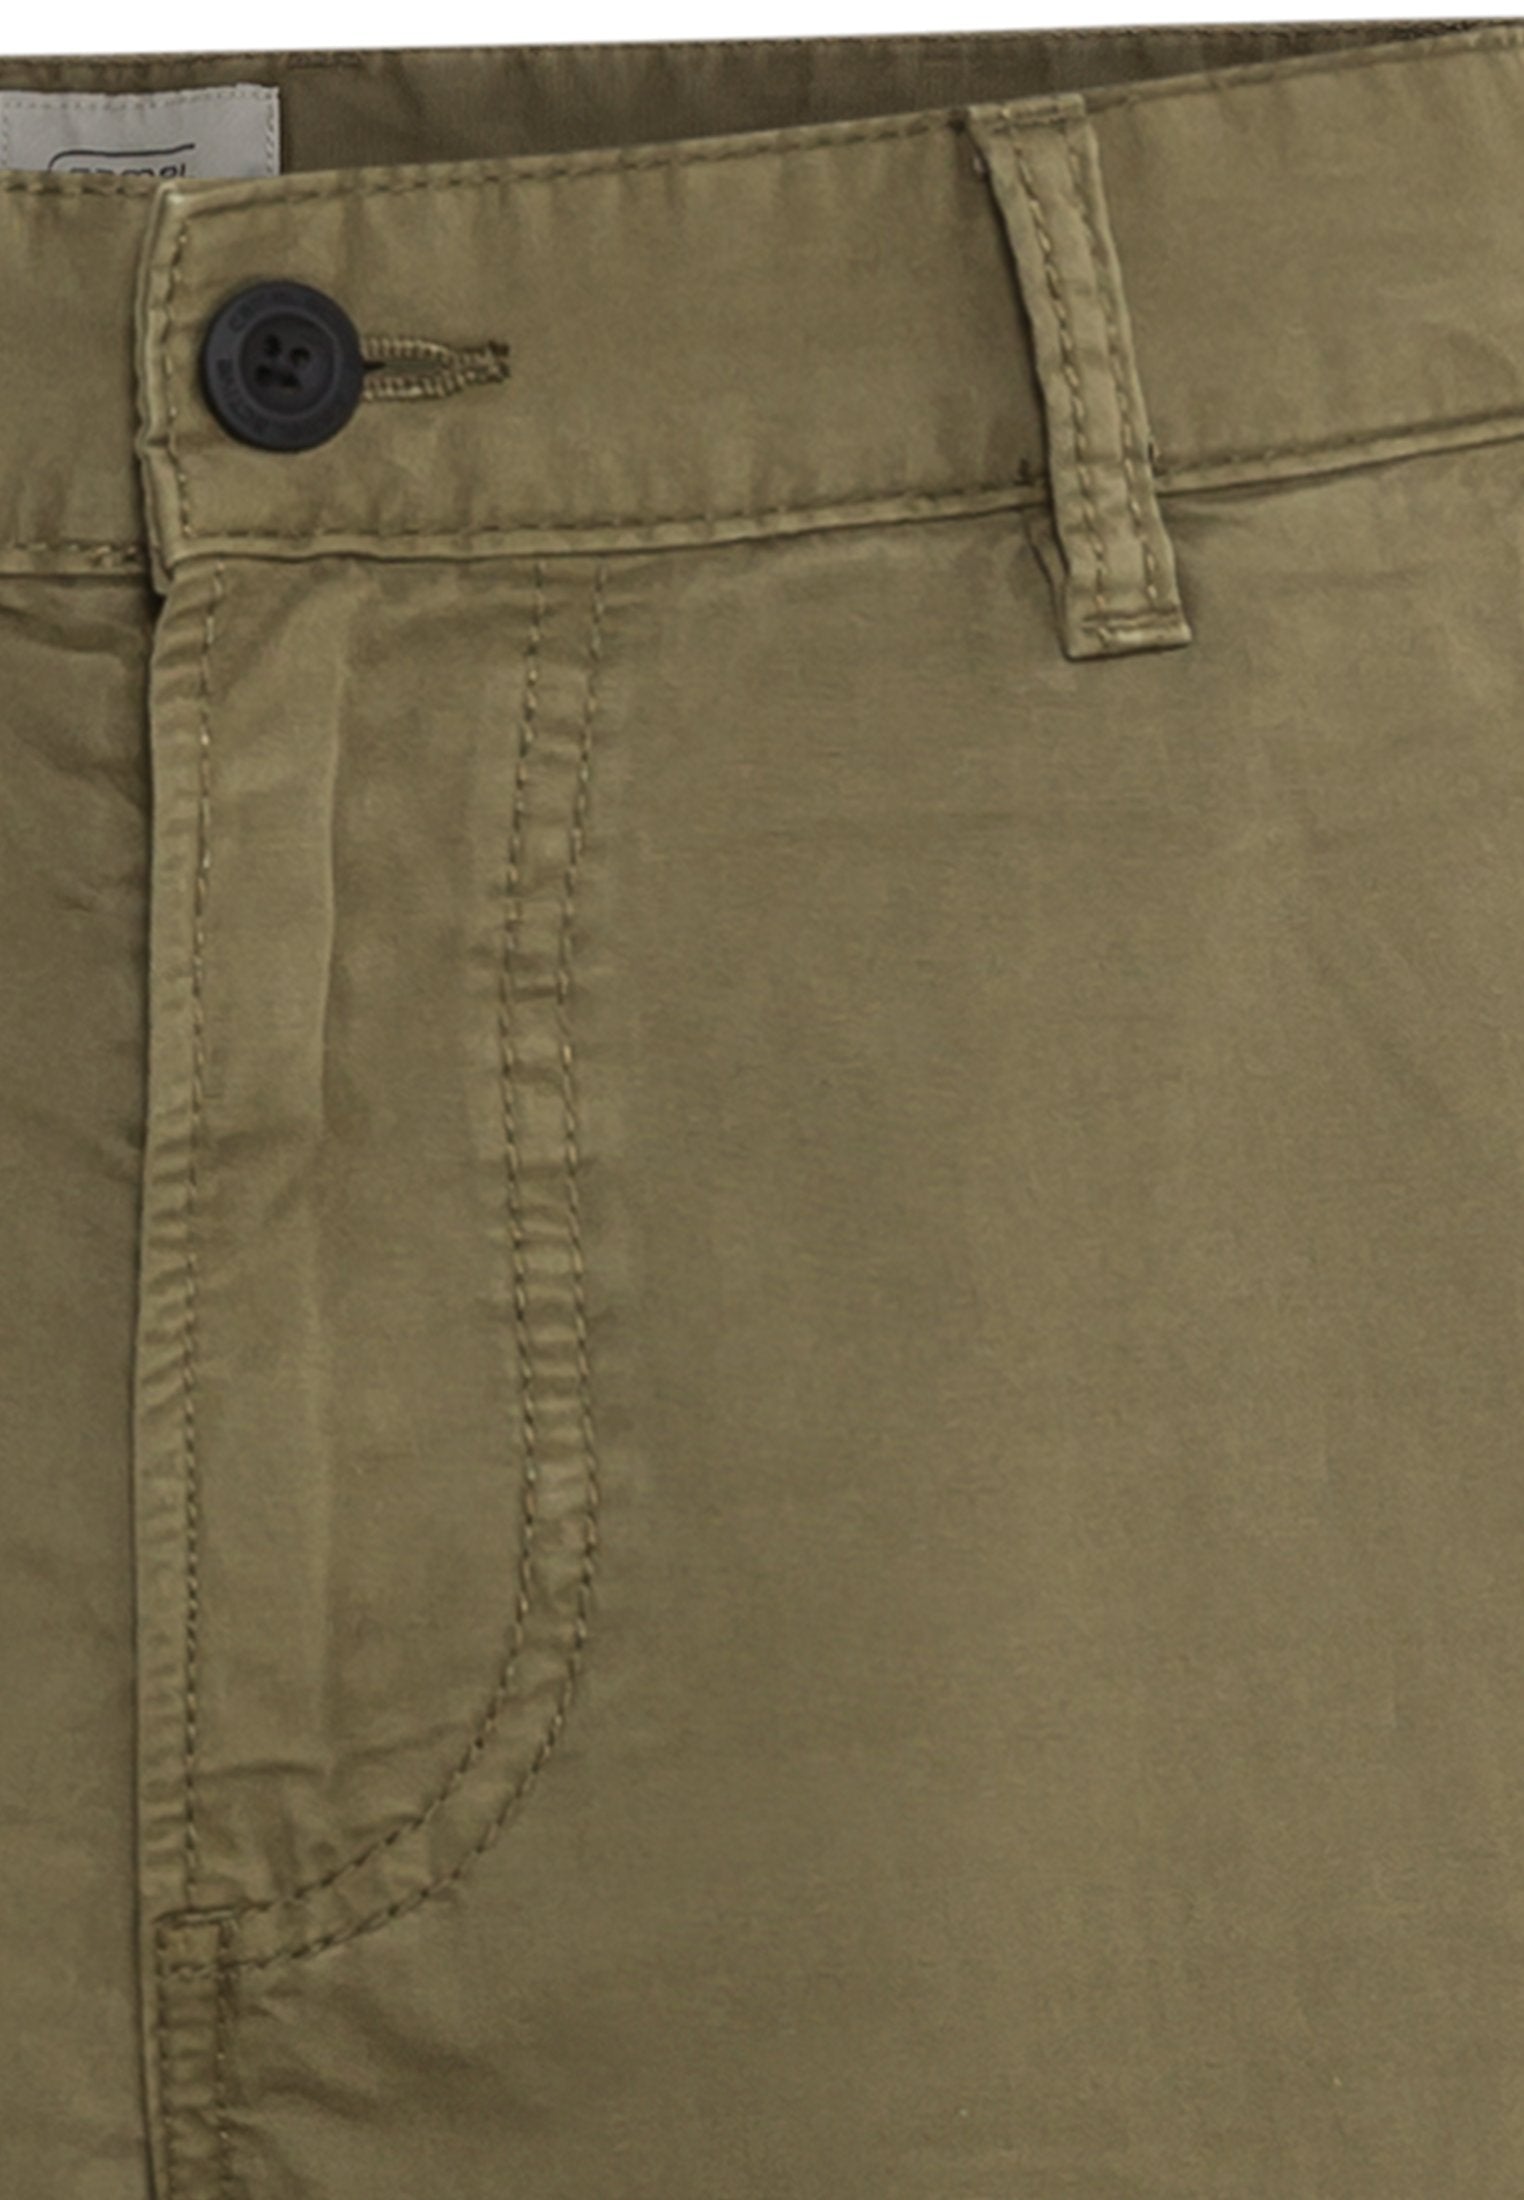 Chino Shorts aus reiner Baumwolle (Olive Brown)